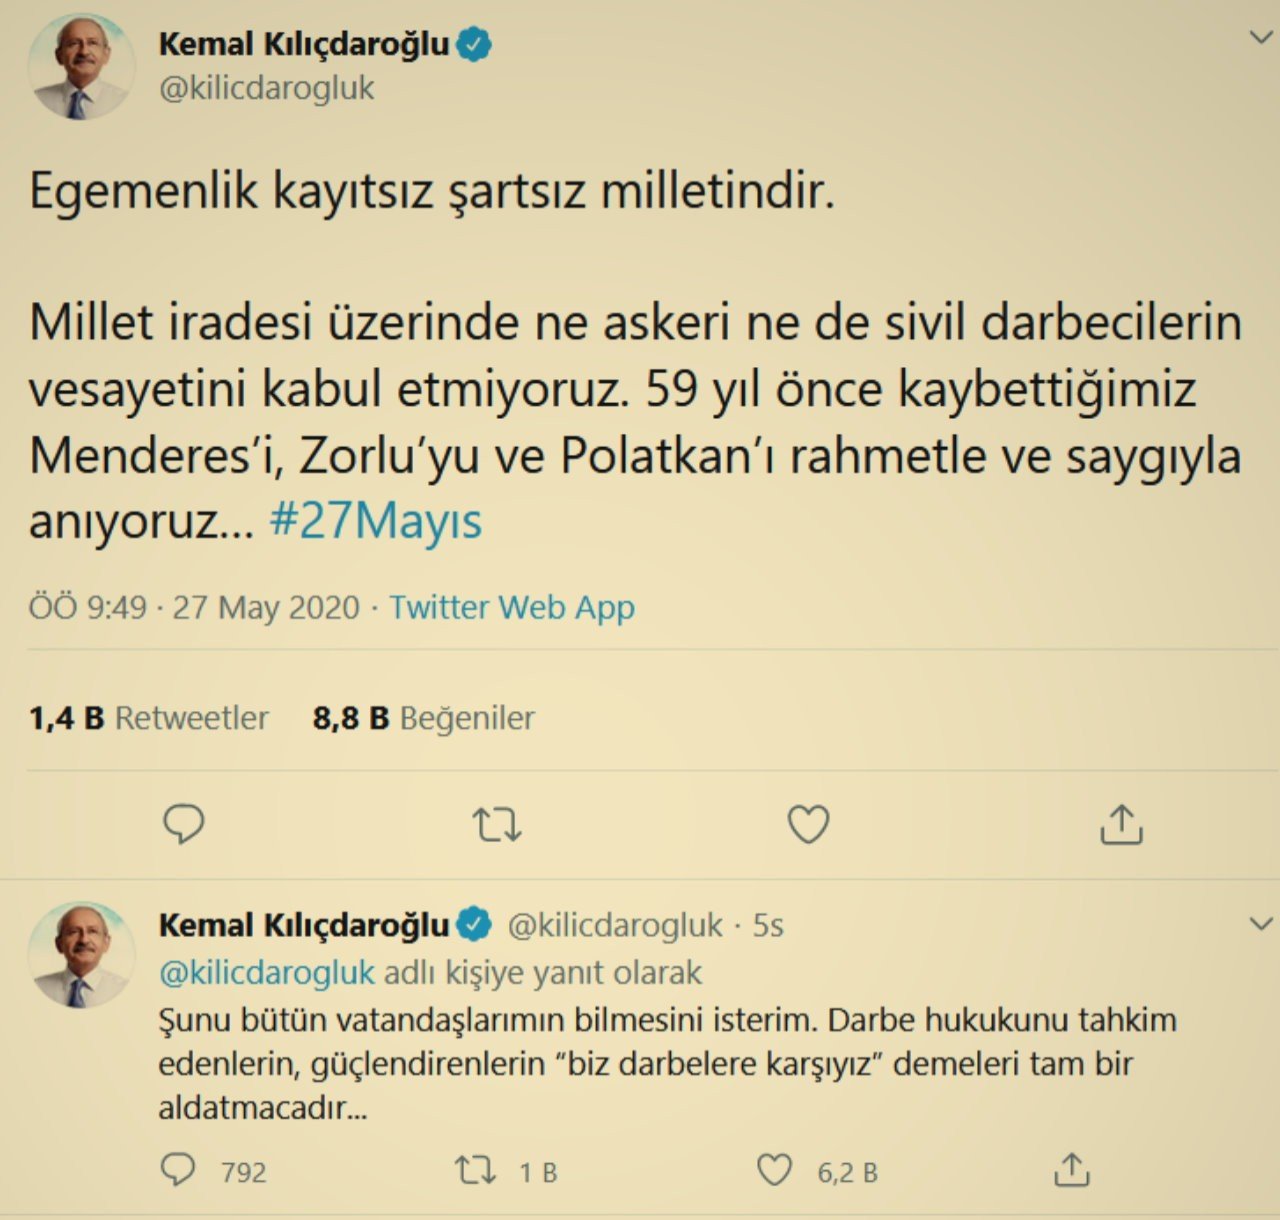 Kemal Kılıçdaroğlu: Biz darbelere karşıyız demeleri tam bir aldatmacadır